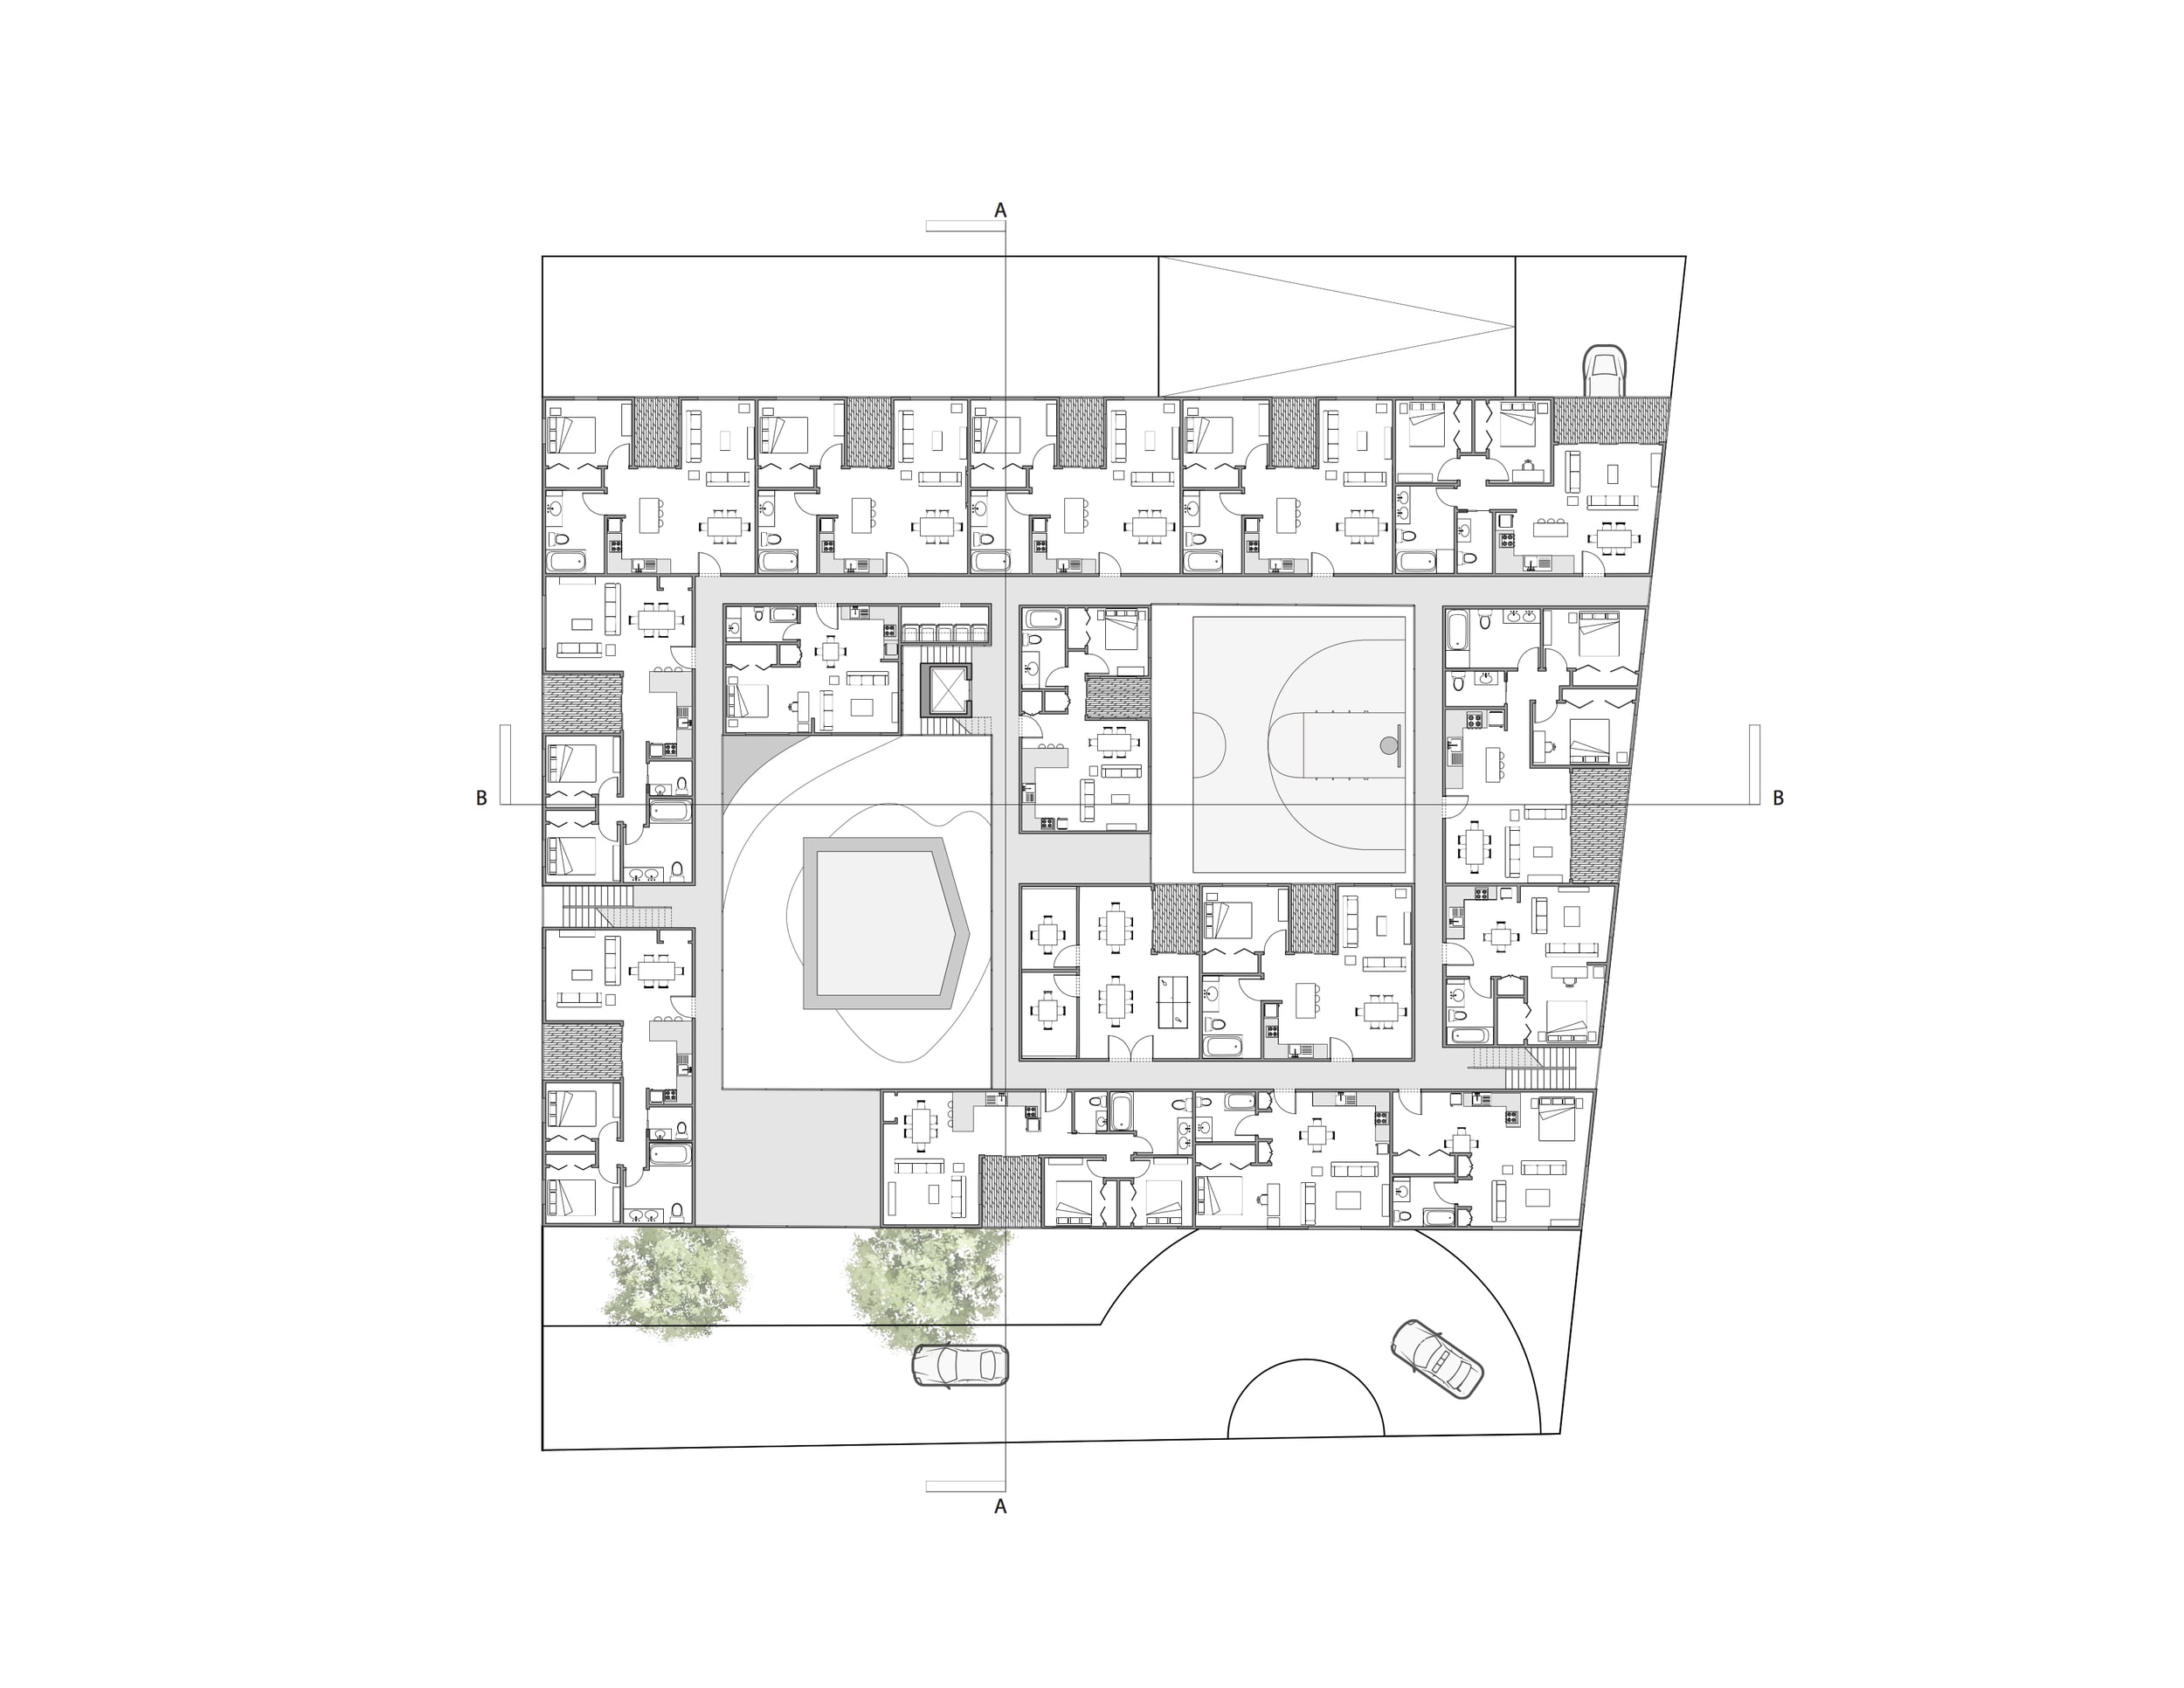  First floor housing plan 